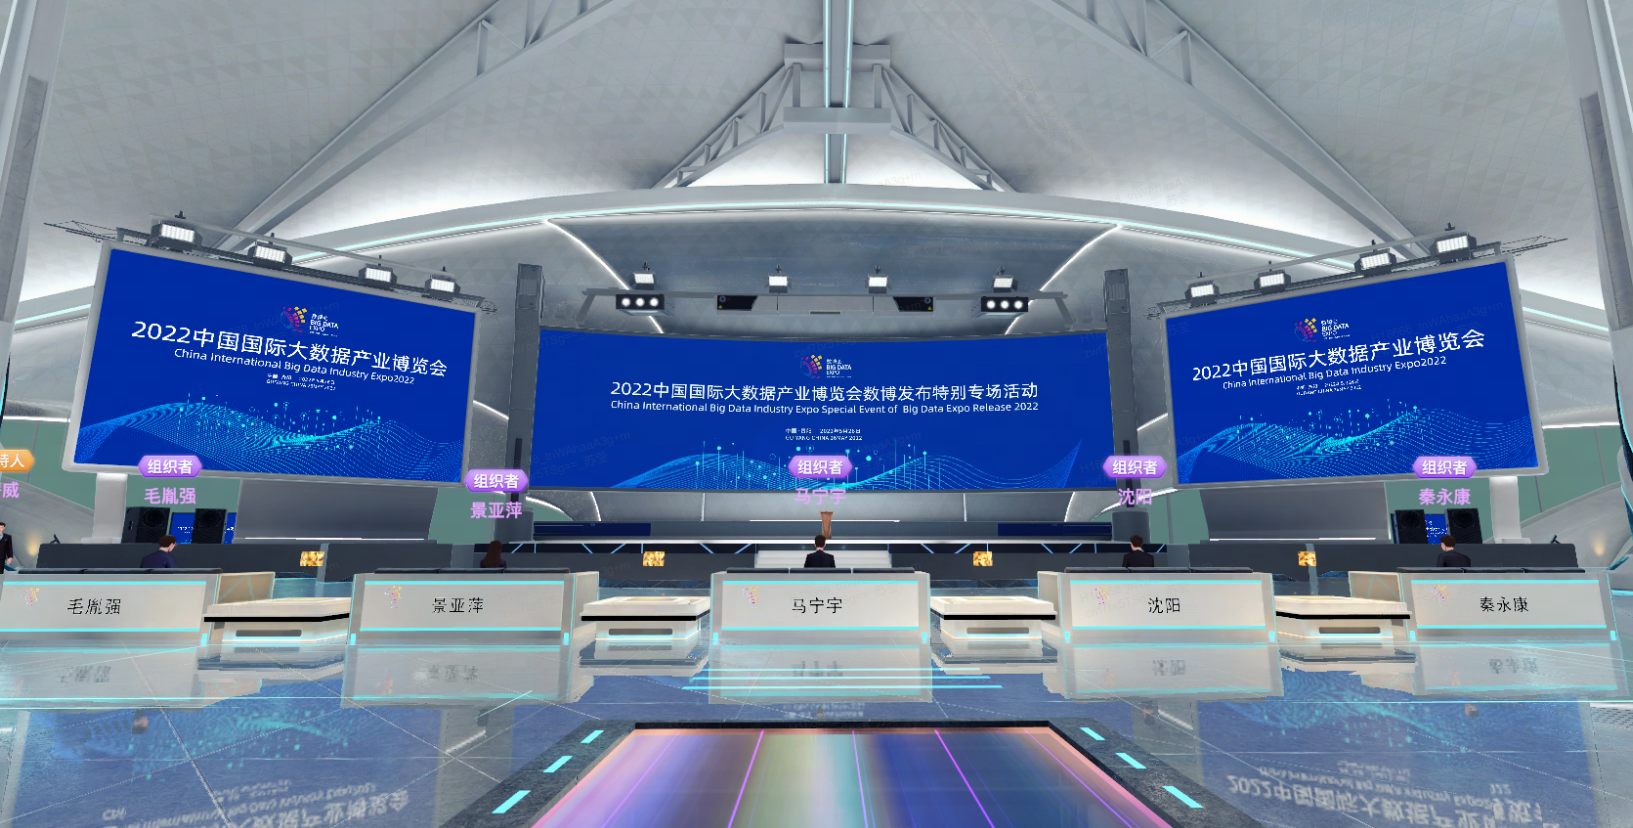 图片展示了一个现代化会议场馆，有屏幕显示2022年信息，台前排列着整齐的接待台和炫彩地面。